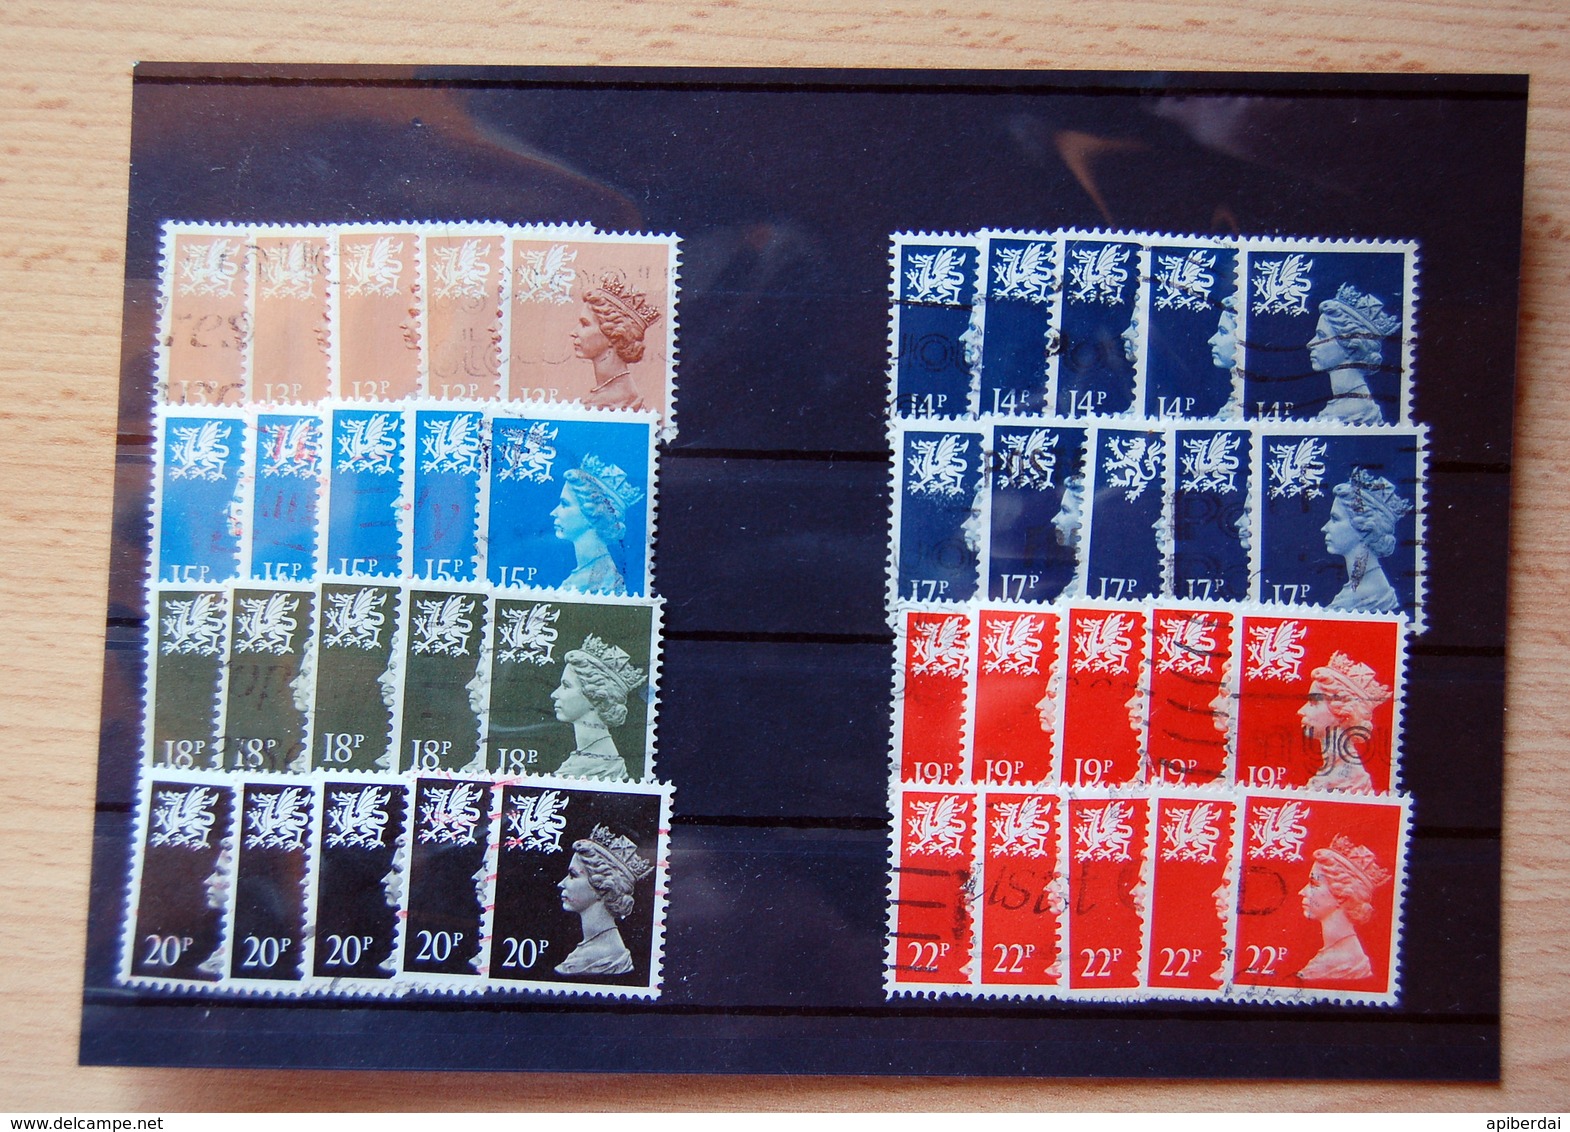 Wales - 5 X 8 Differents ( 13p , 14p , 15p , 17p , 18p , 19p , 20p , 22p ) Stamps From Wales Used - Série 'Machin'